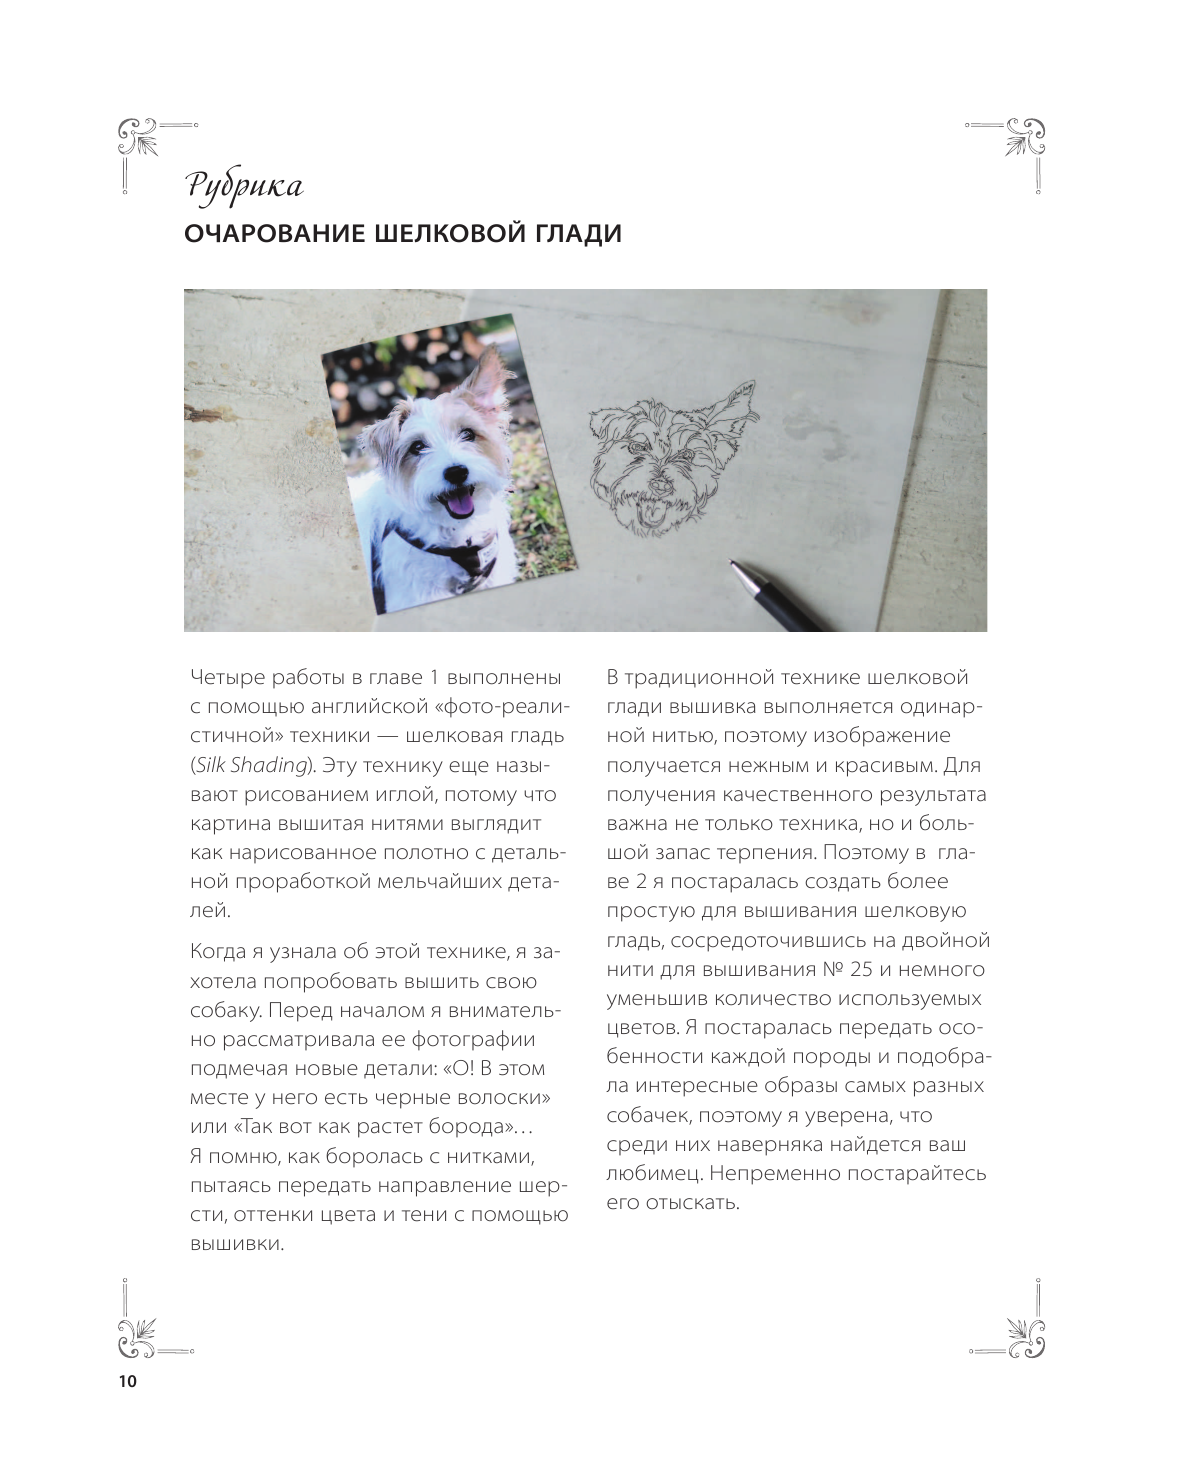 Портретная вышивка. Самоучитель по «рисованию» собак вышивальной иглой (чихуахуа) - фото №9